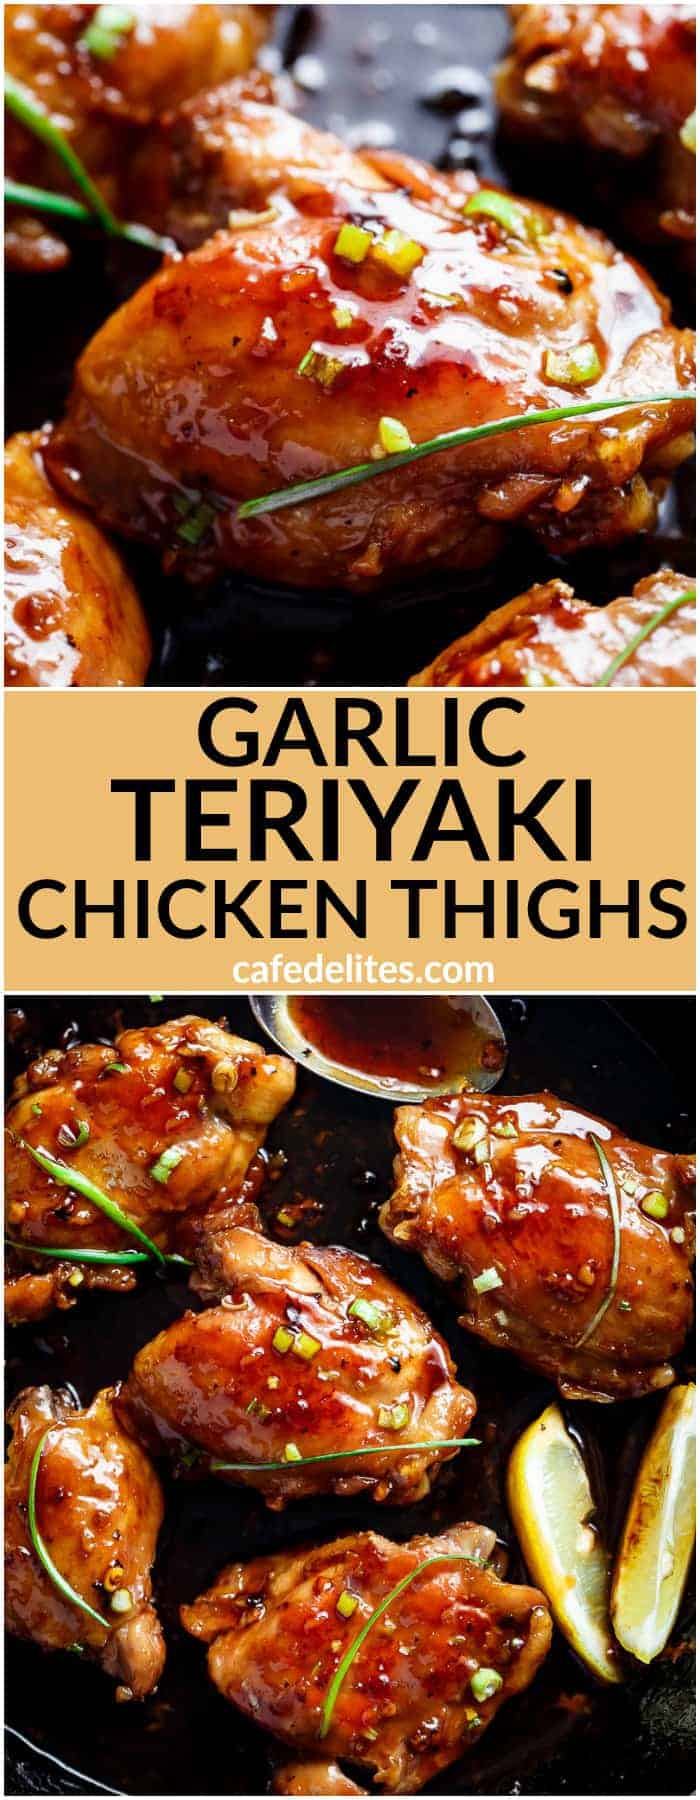 bal zelfstandig naamwoord Gewoon overlopen Garlic Teriyaki Chicken Thighs - Cafe Delites